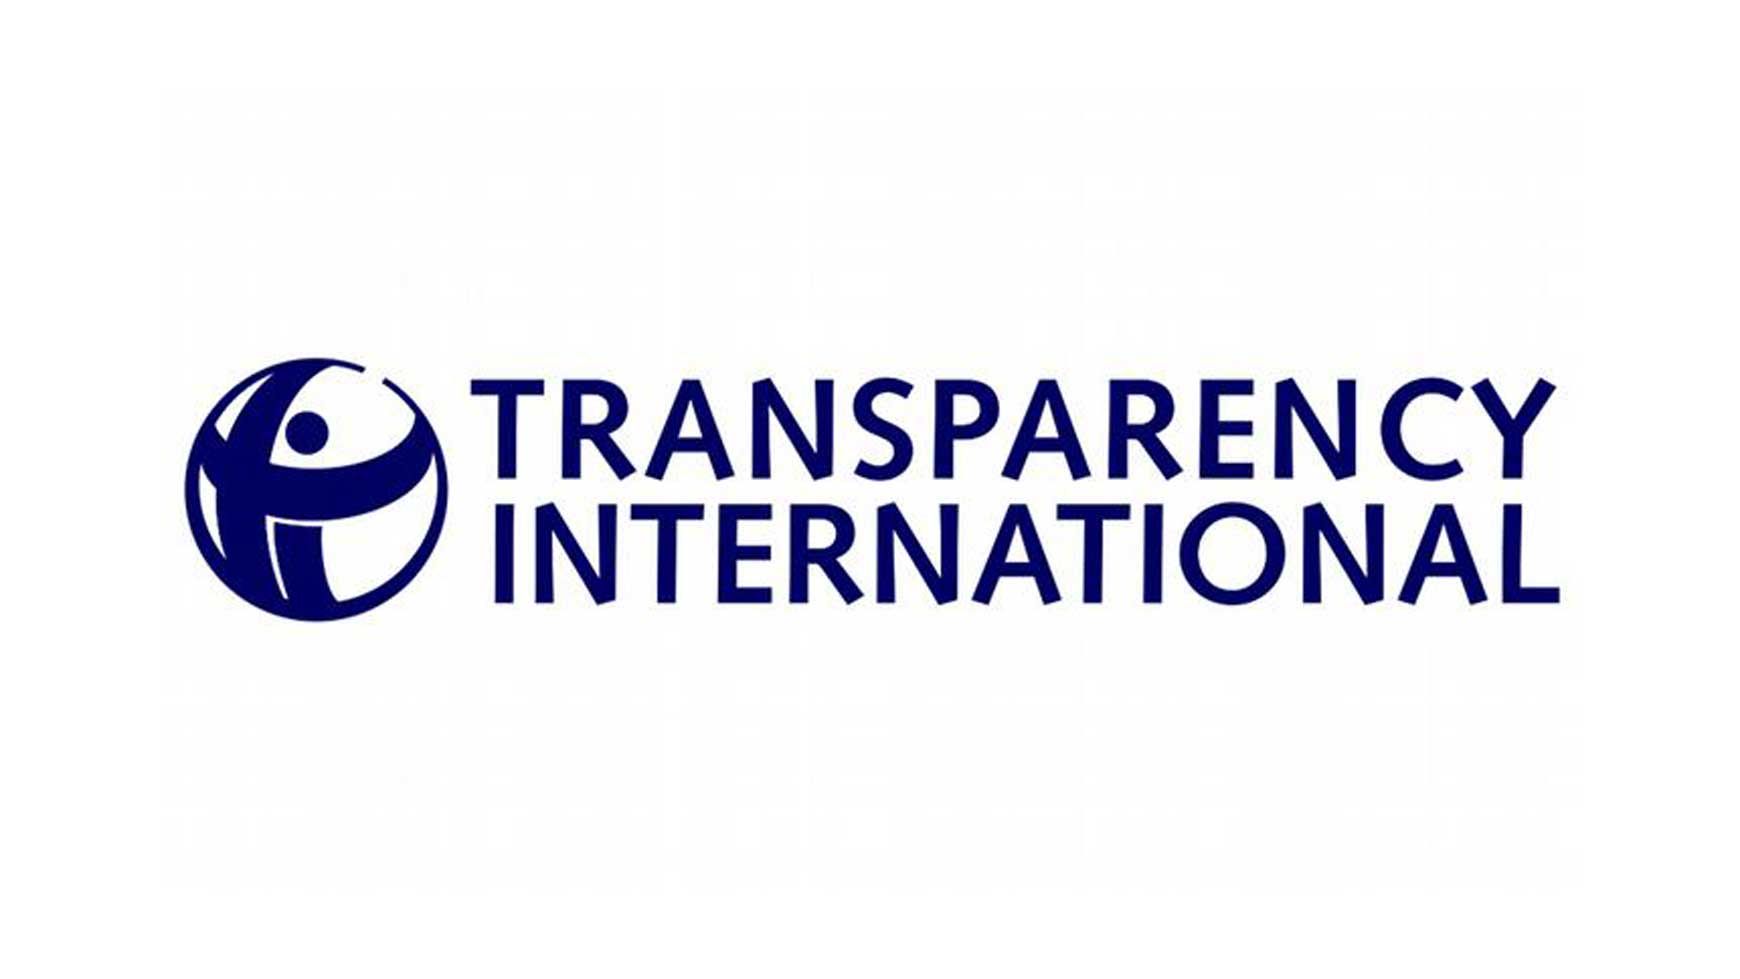 ТОП-10 самых болезненных коррупционных проблем в Украине по версии Transparency International